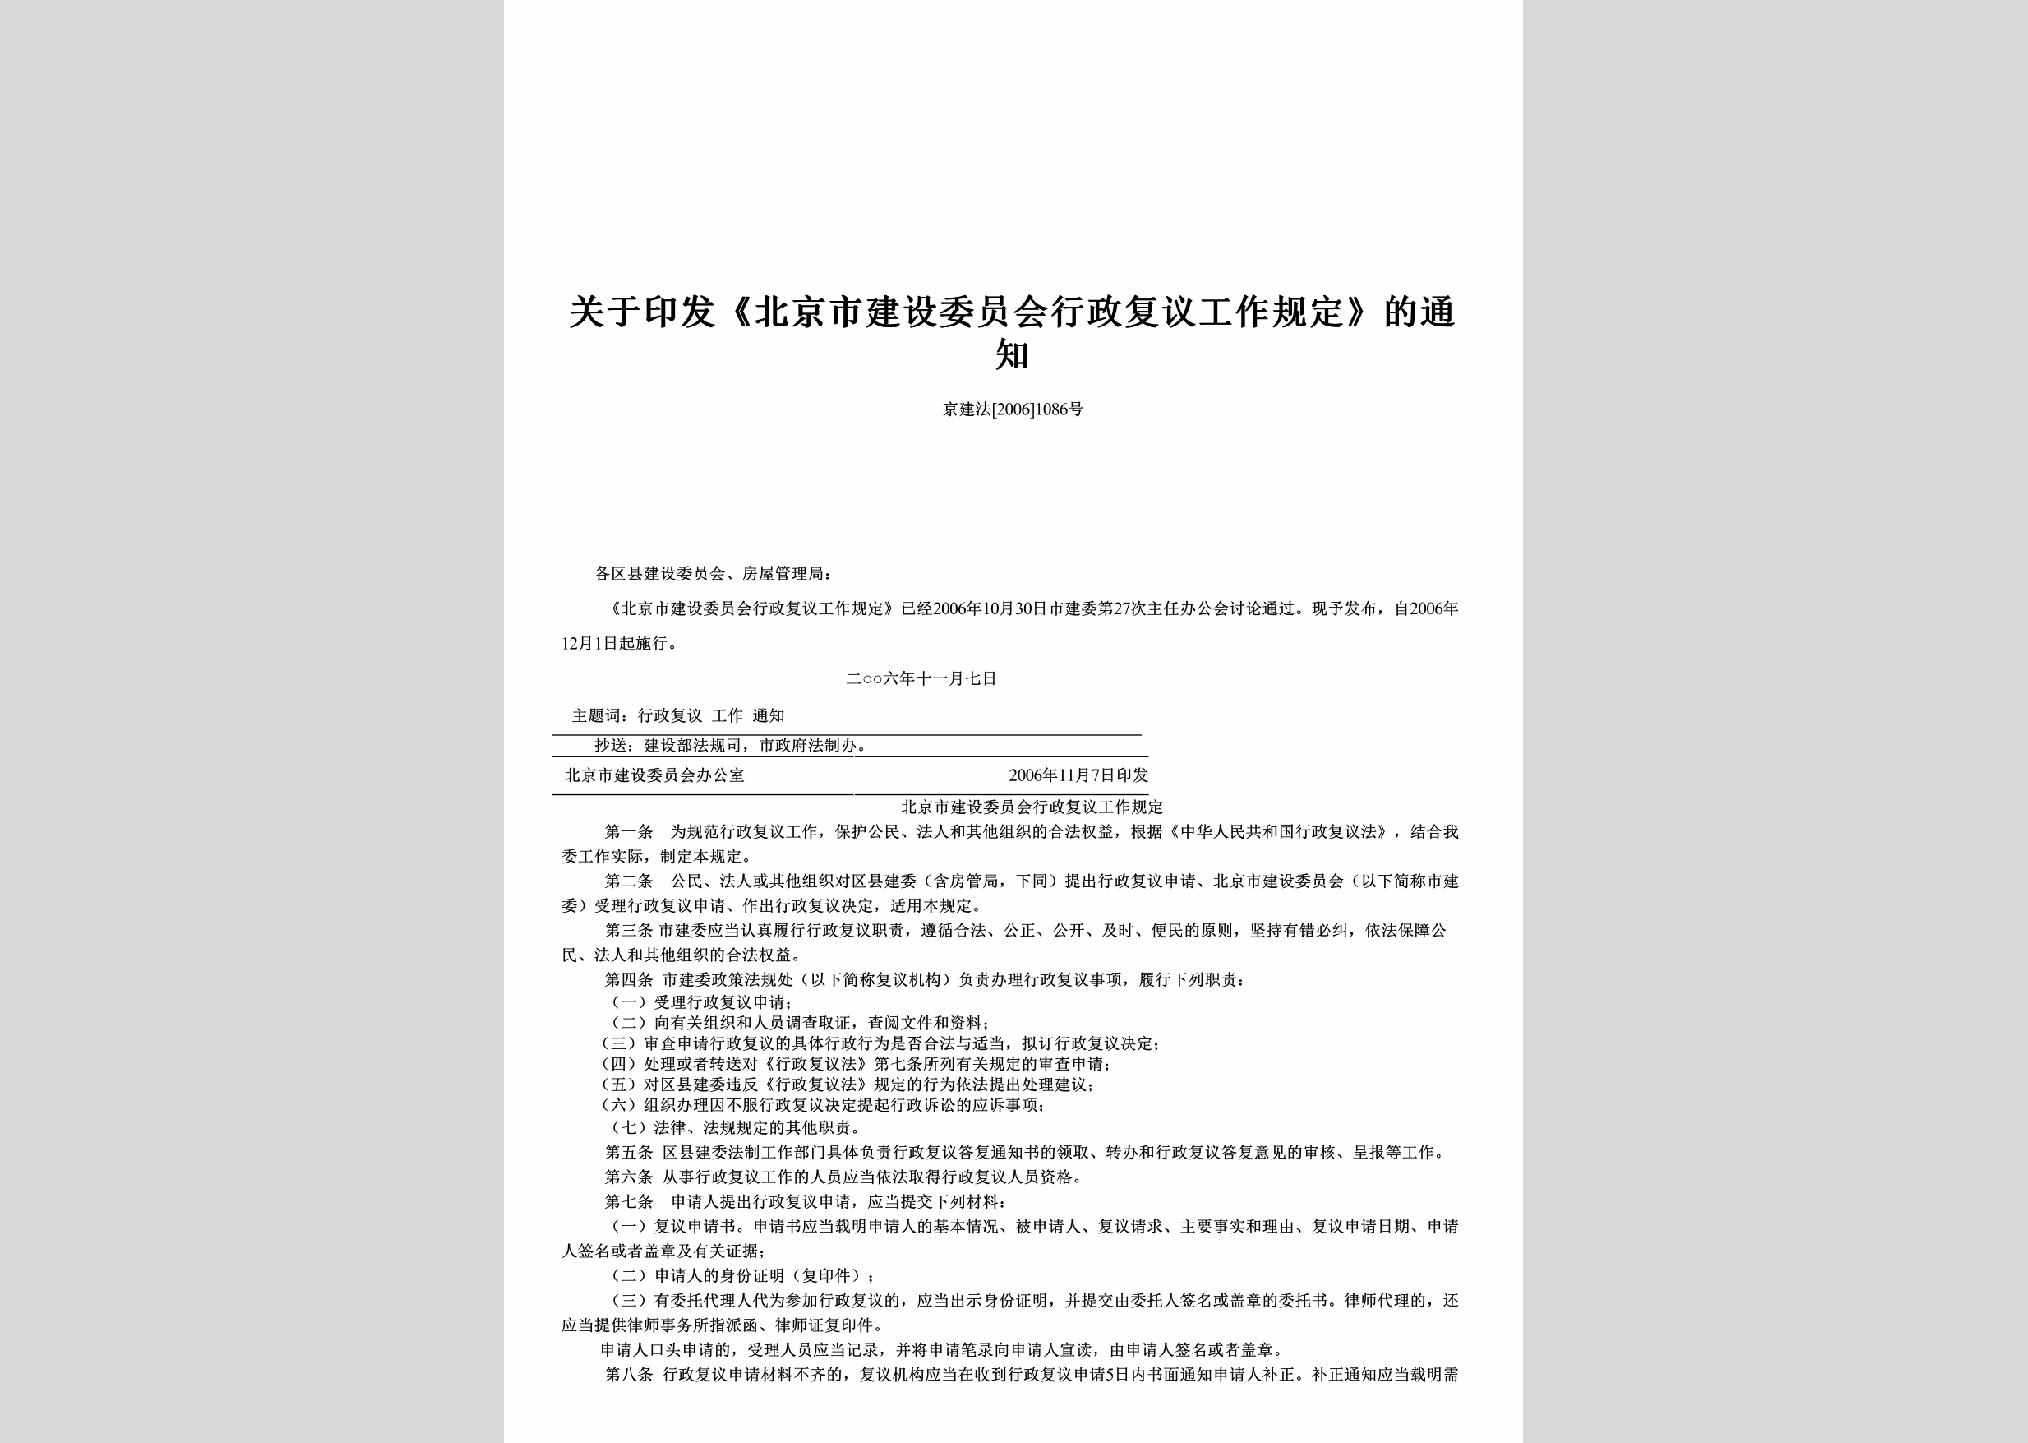 京建法[2006]1086号：关于印发《北京市建设委员会行政复议工作规定》的通知